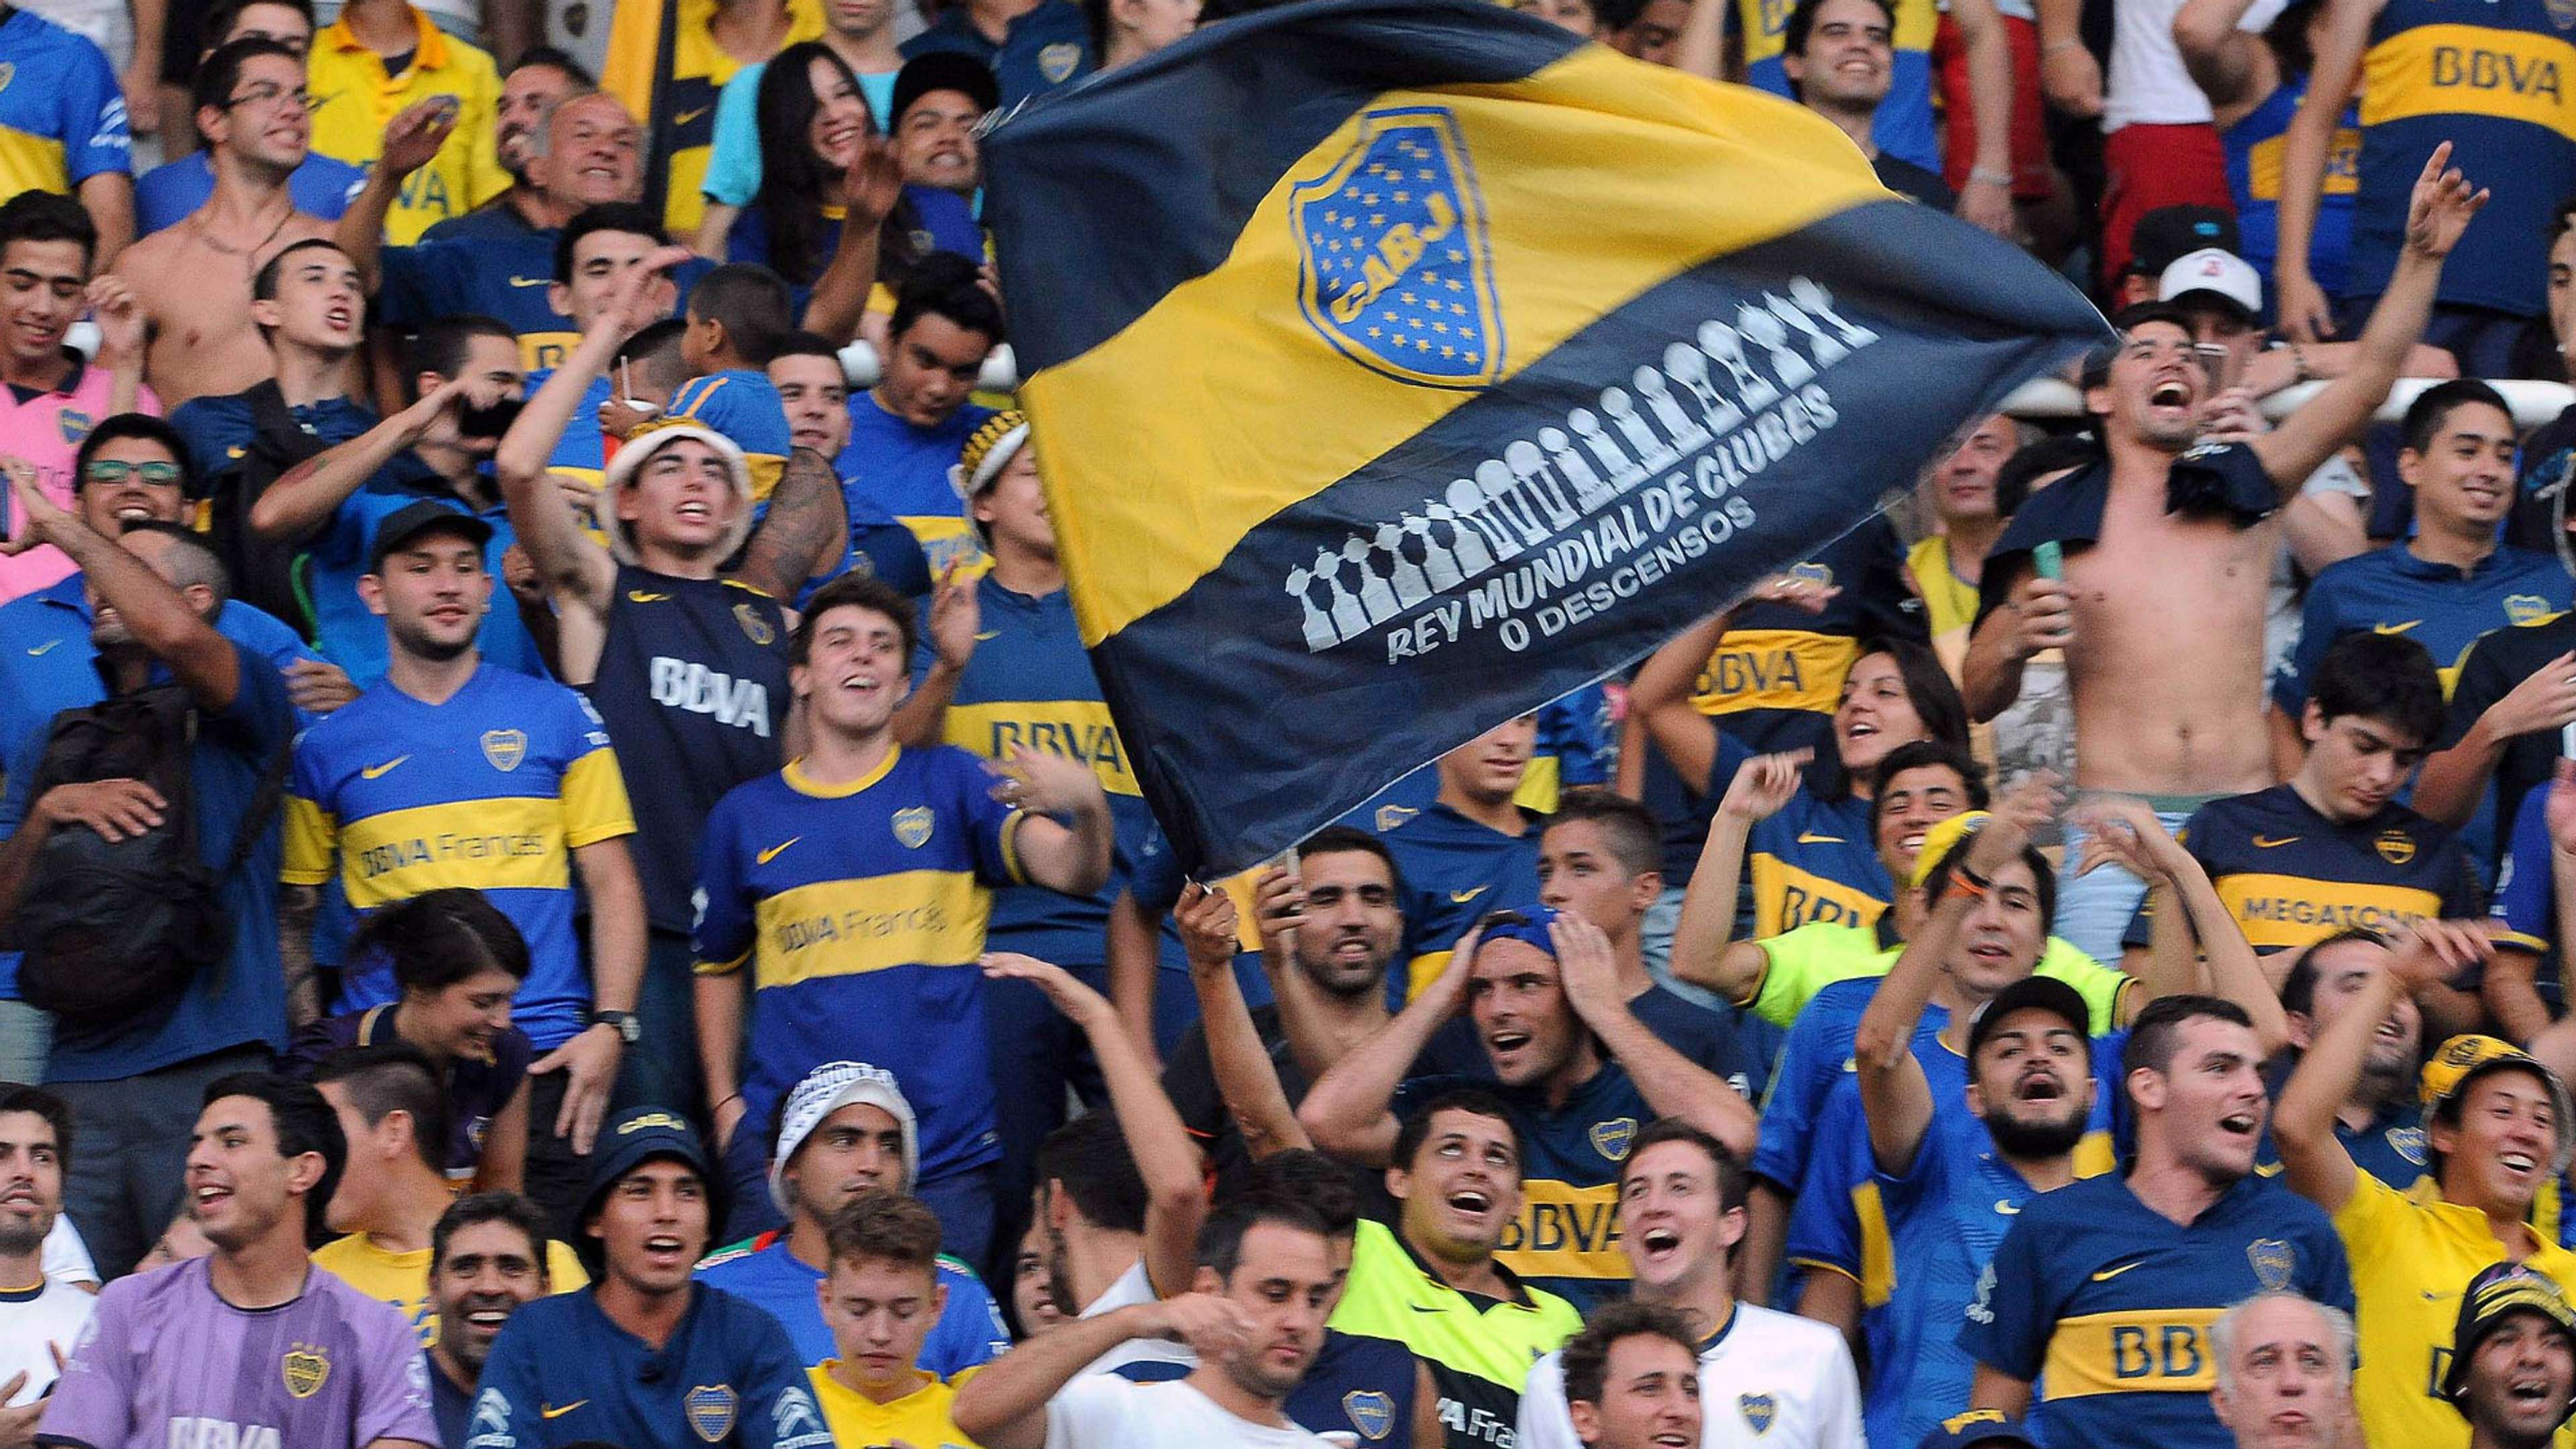 Hinchas Boca Juniors Supercopa Argentina